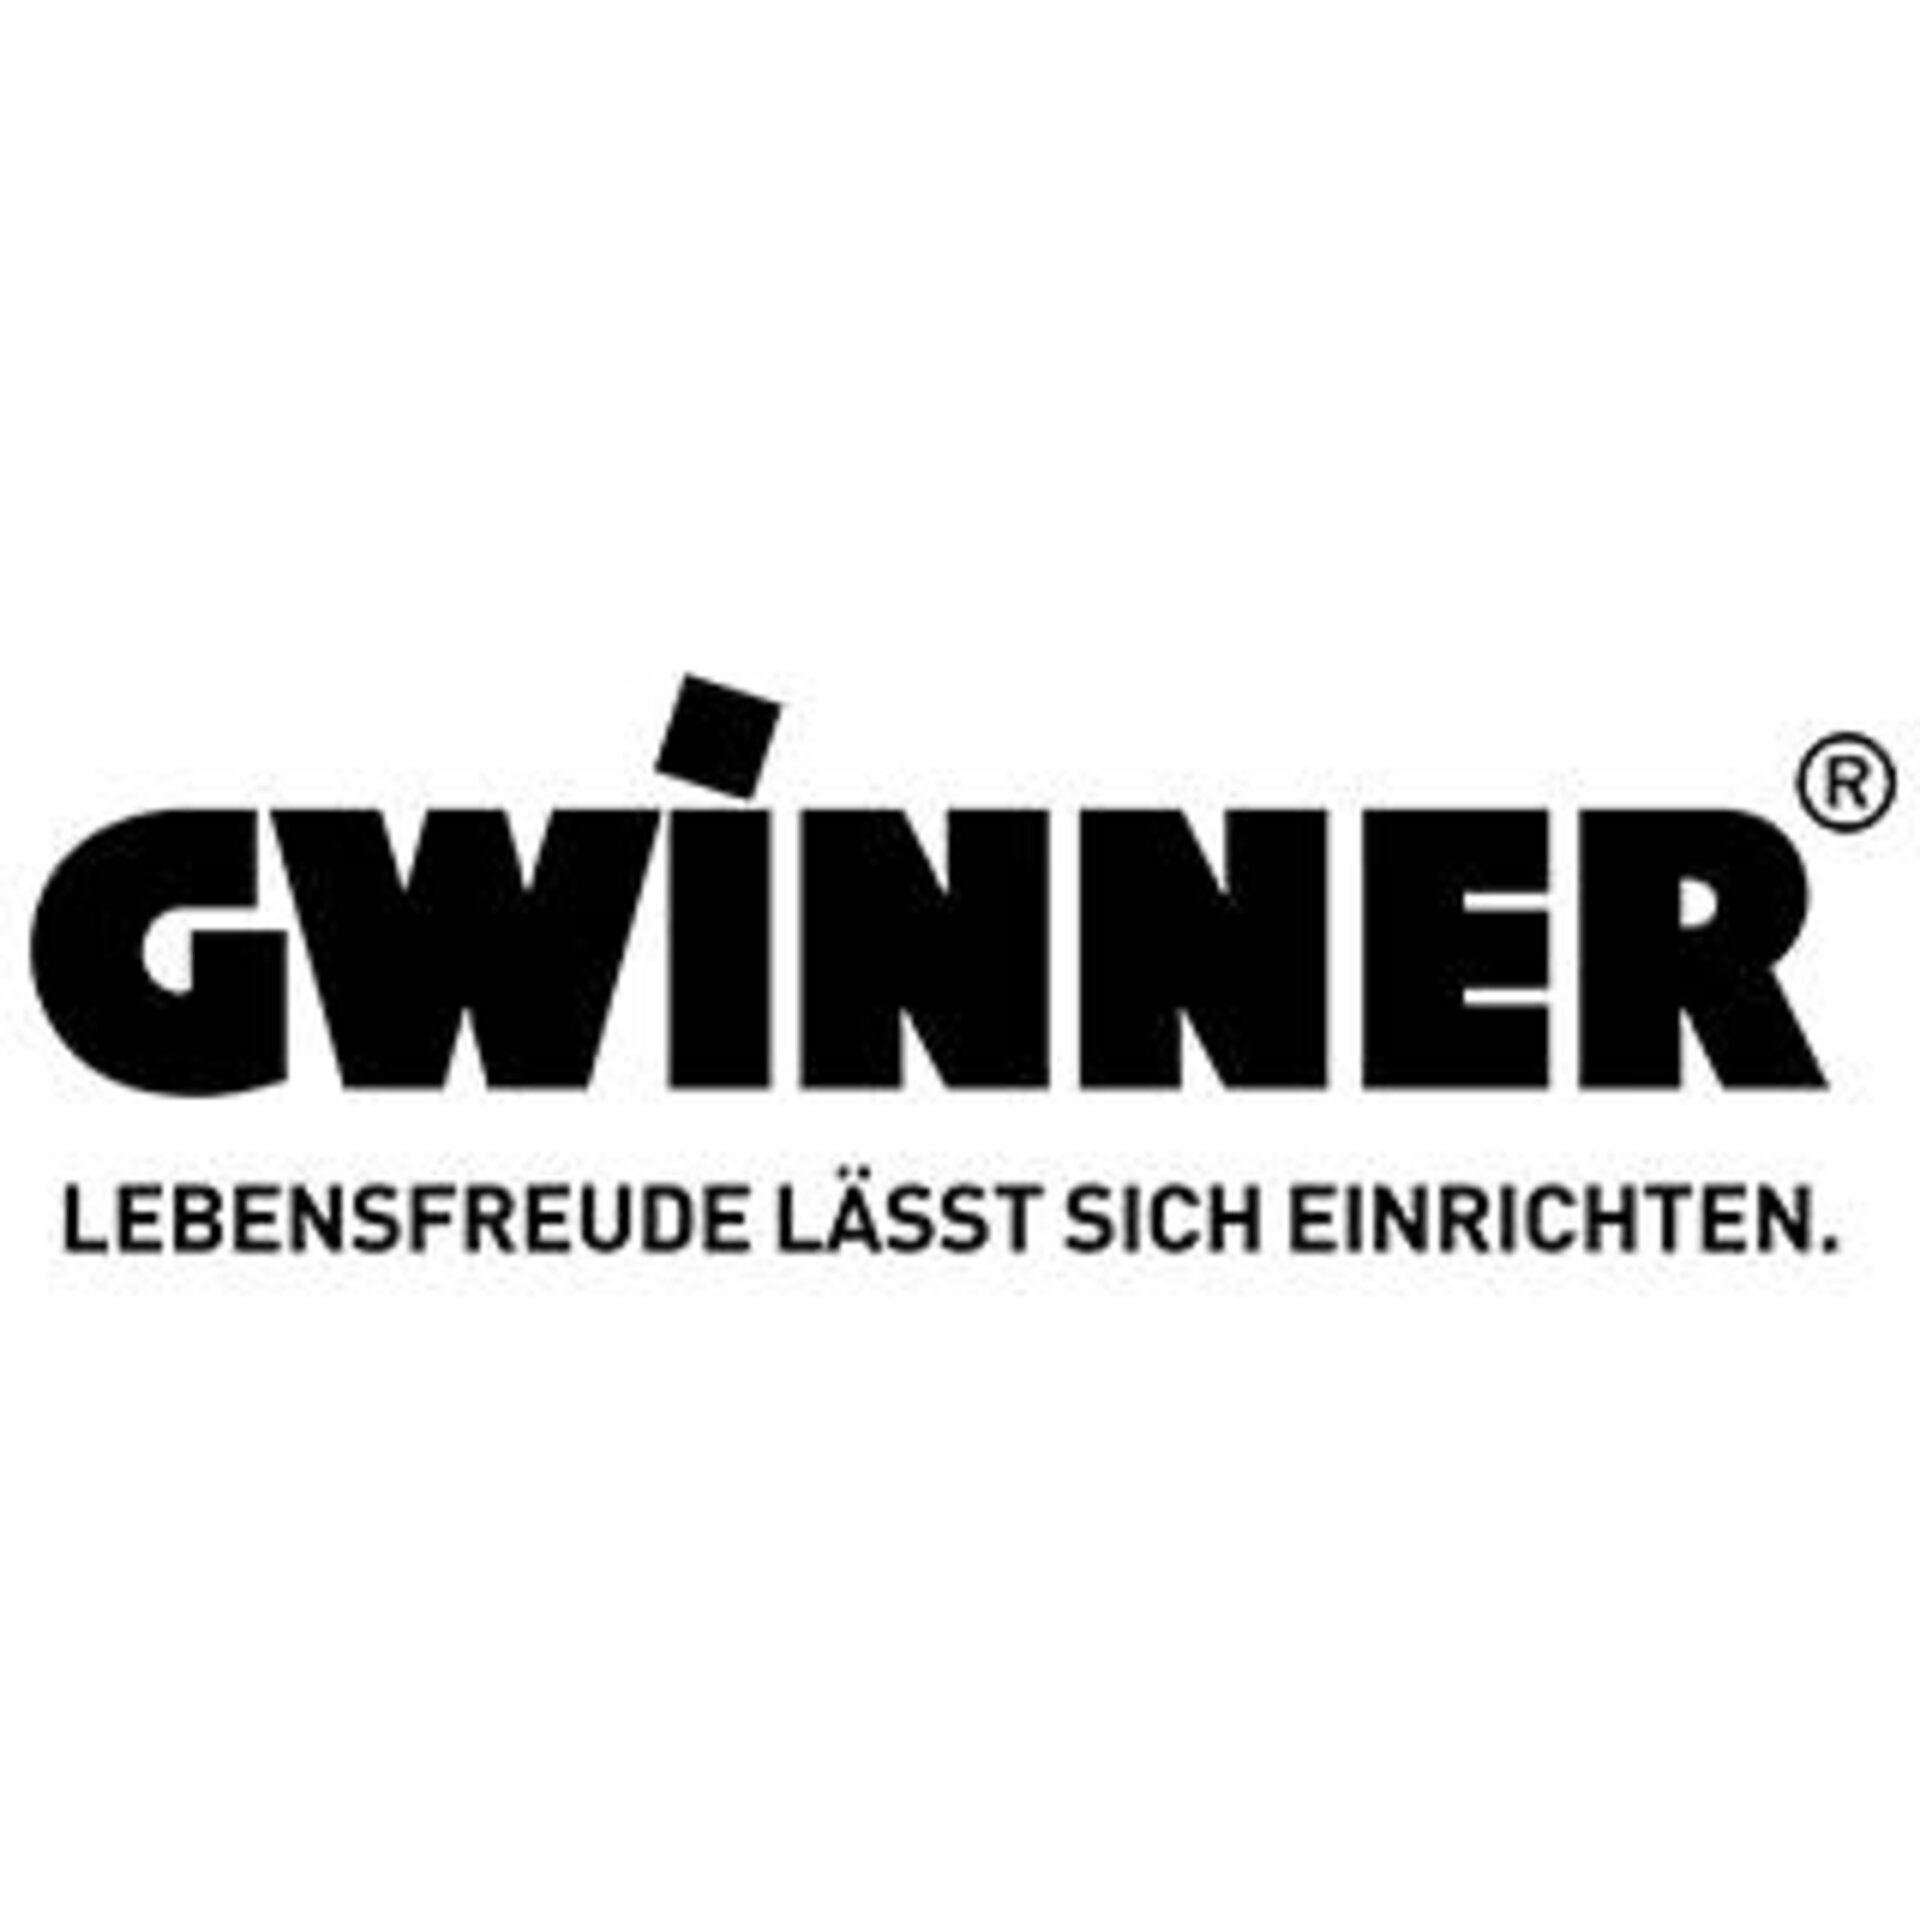 Logo "GWINNER - Lebensfreude lässt sich Einrichten"